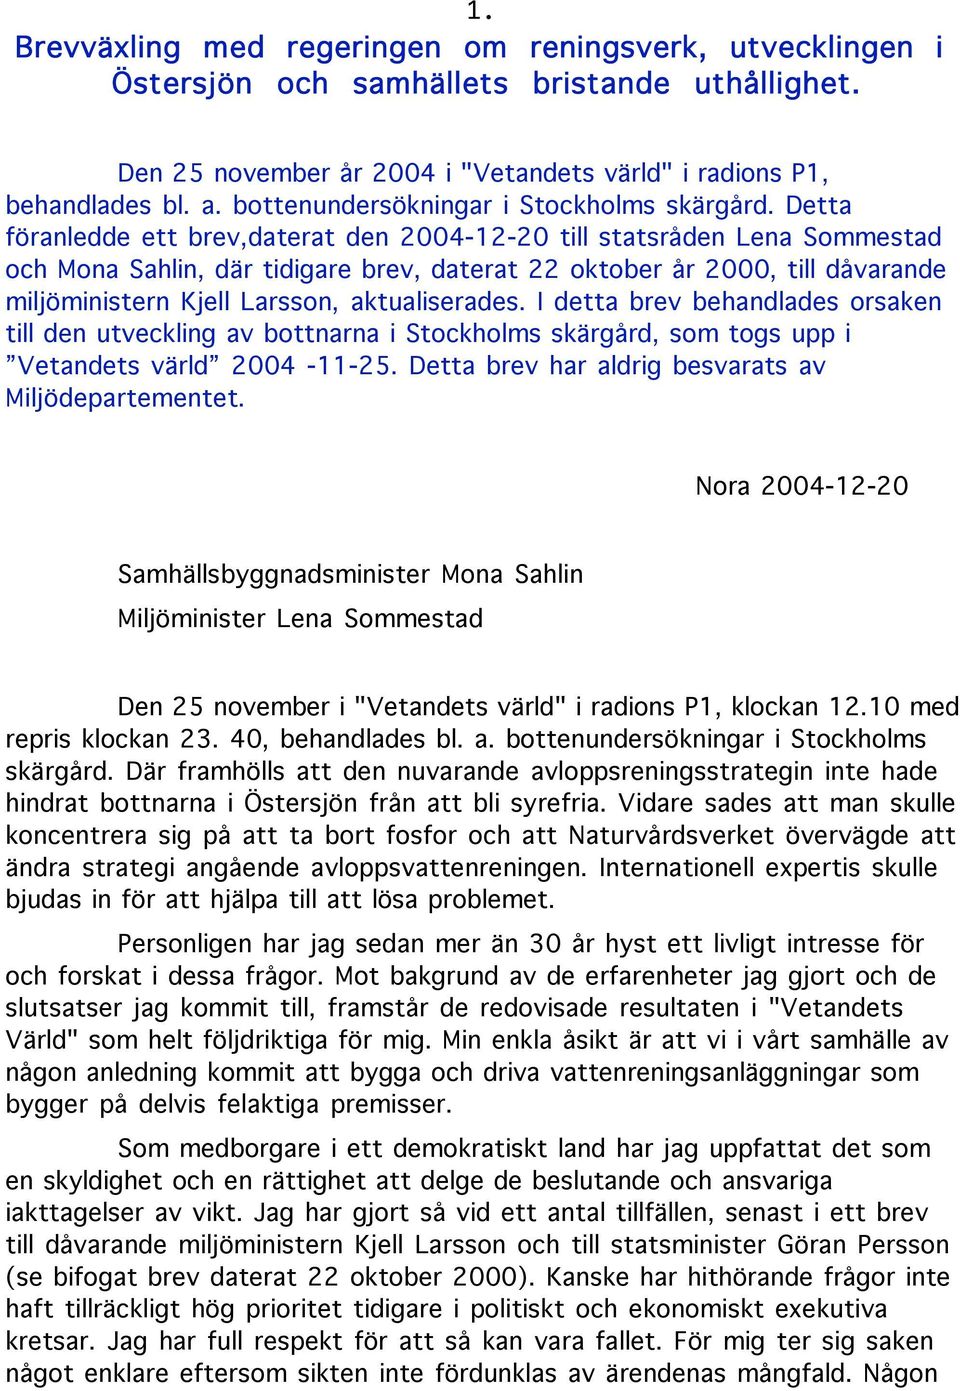 Detta föranledde ett brev,daterat den 2004-12-20 till statsråden Lena Sommestad och Mona Sahlin, där tidigare brev, daterat 22 oktober år 2000, till dåvarande miljöministern Kjell Larsson,